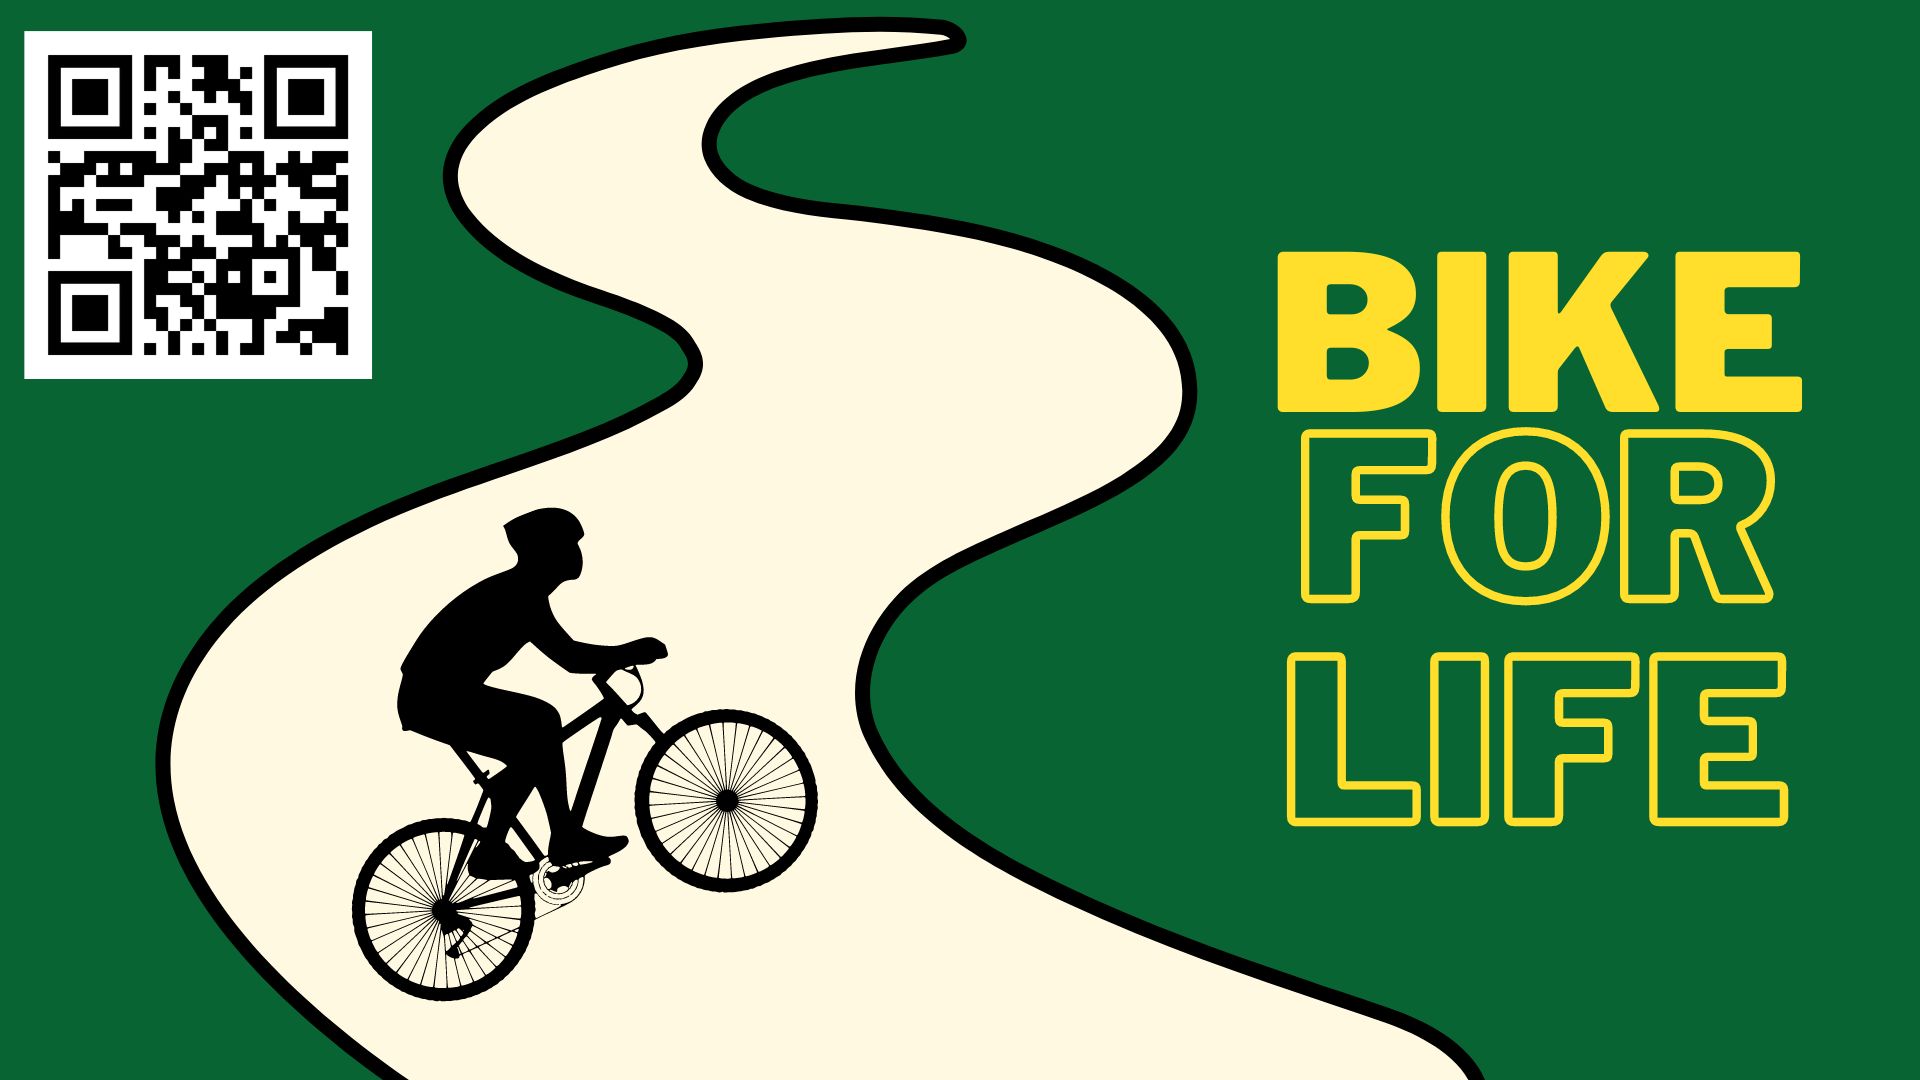 Bike for Life: Reconecte-se! Vamos conversar sobre isso.